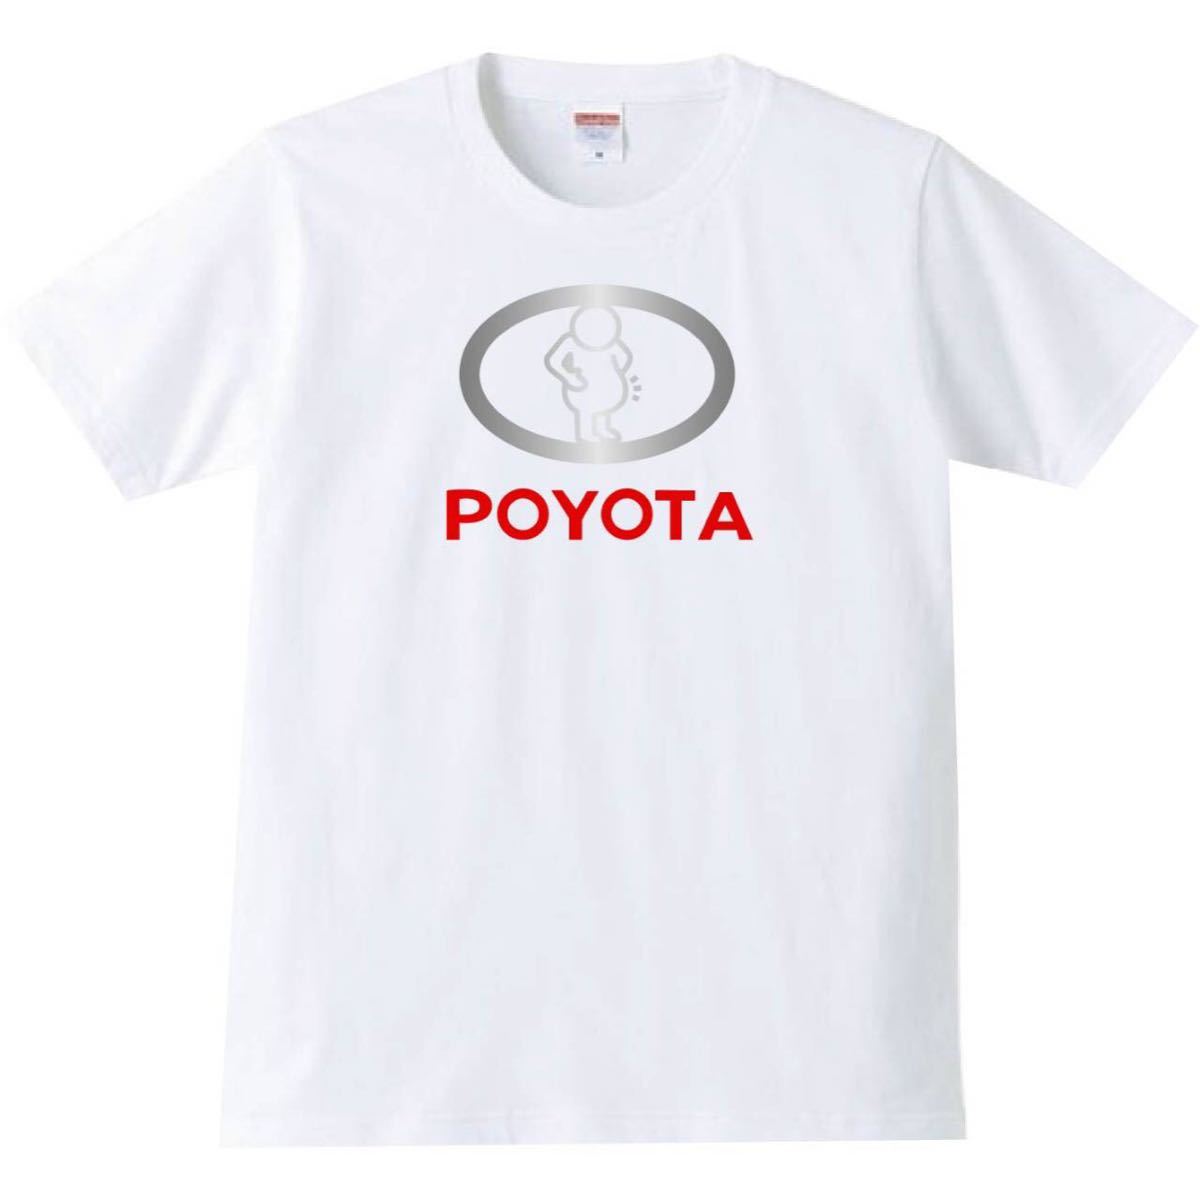 【送料無料】【新品】POYOTA Tシャツ パロディ おもしろ プレゼント メンズ 白 XLサイズ_画像1